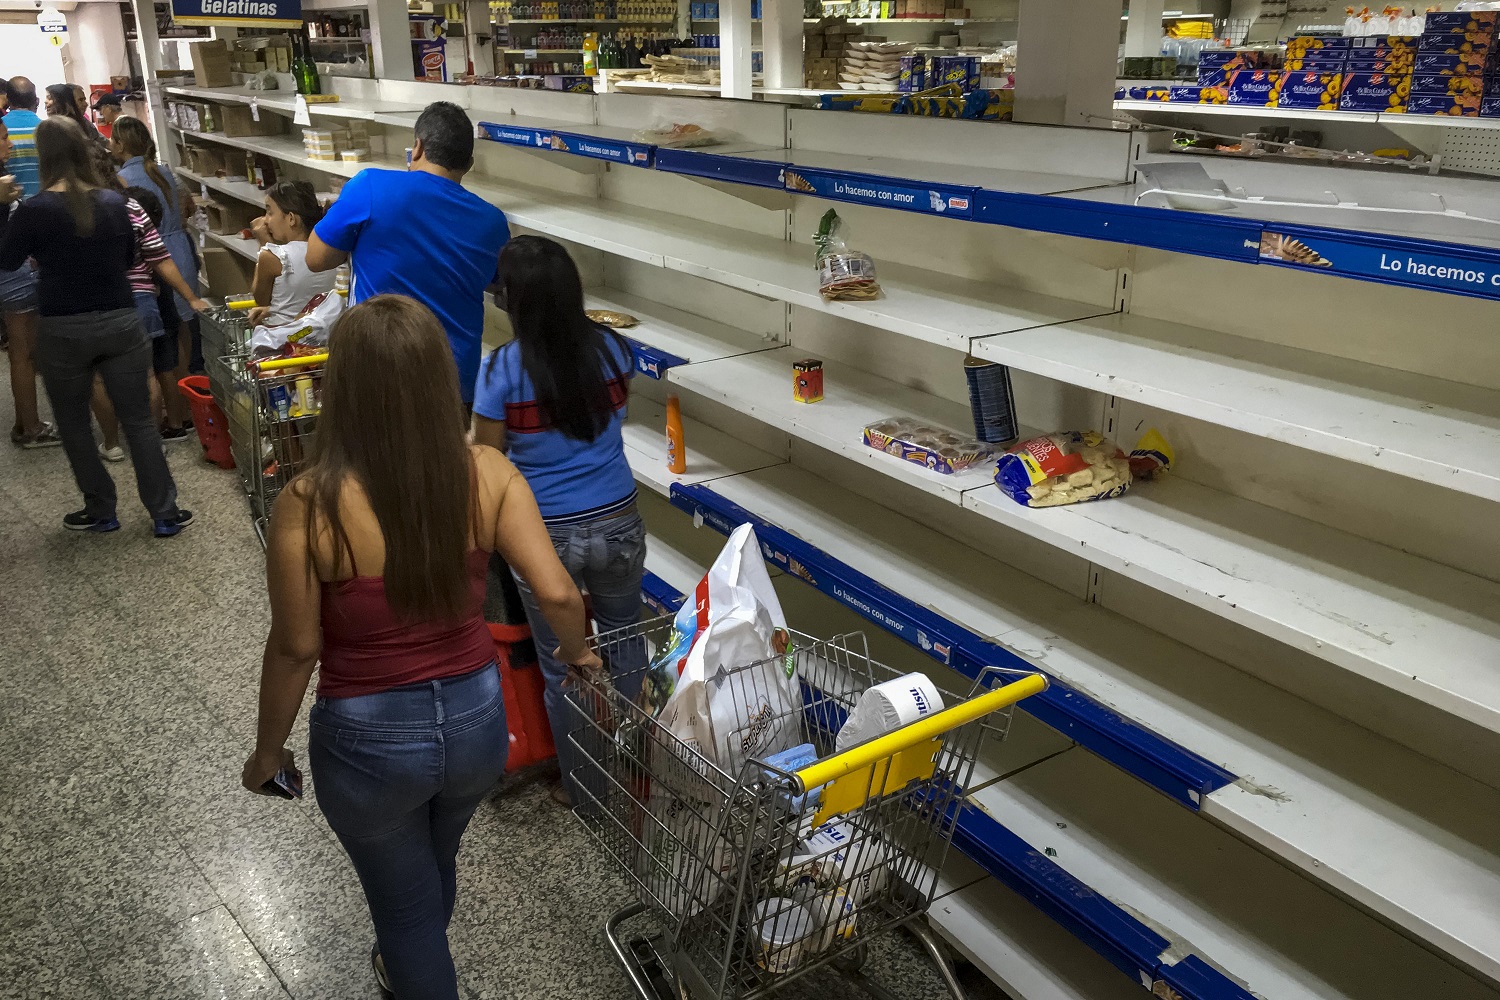 Estiman que en primer trimestre de 2018 Venezuela entrará en colapso funcional de alimentos